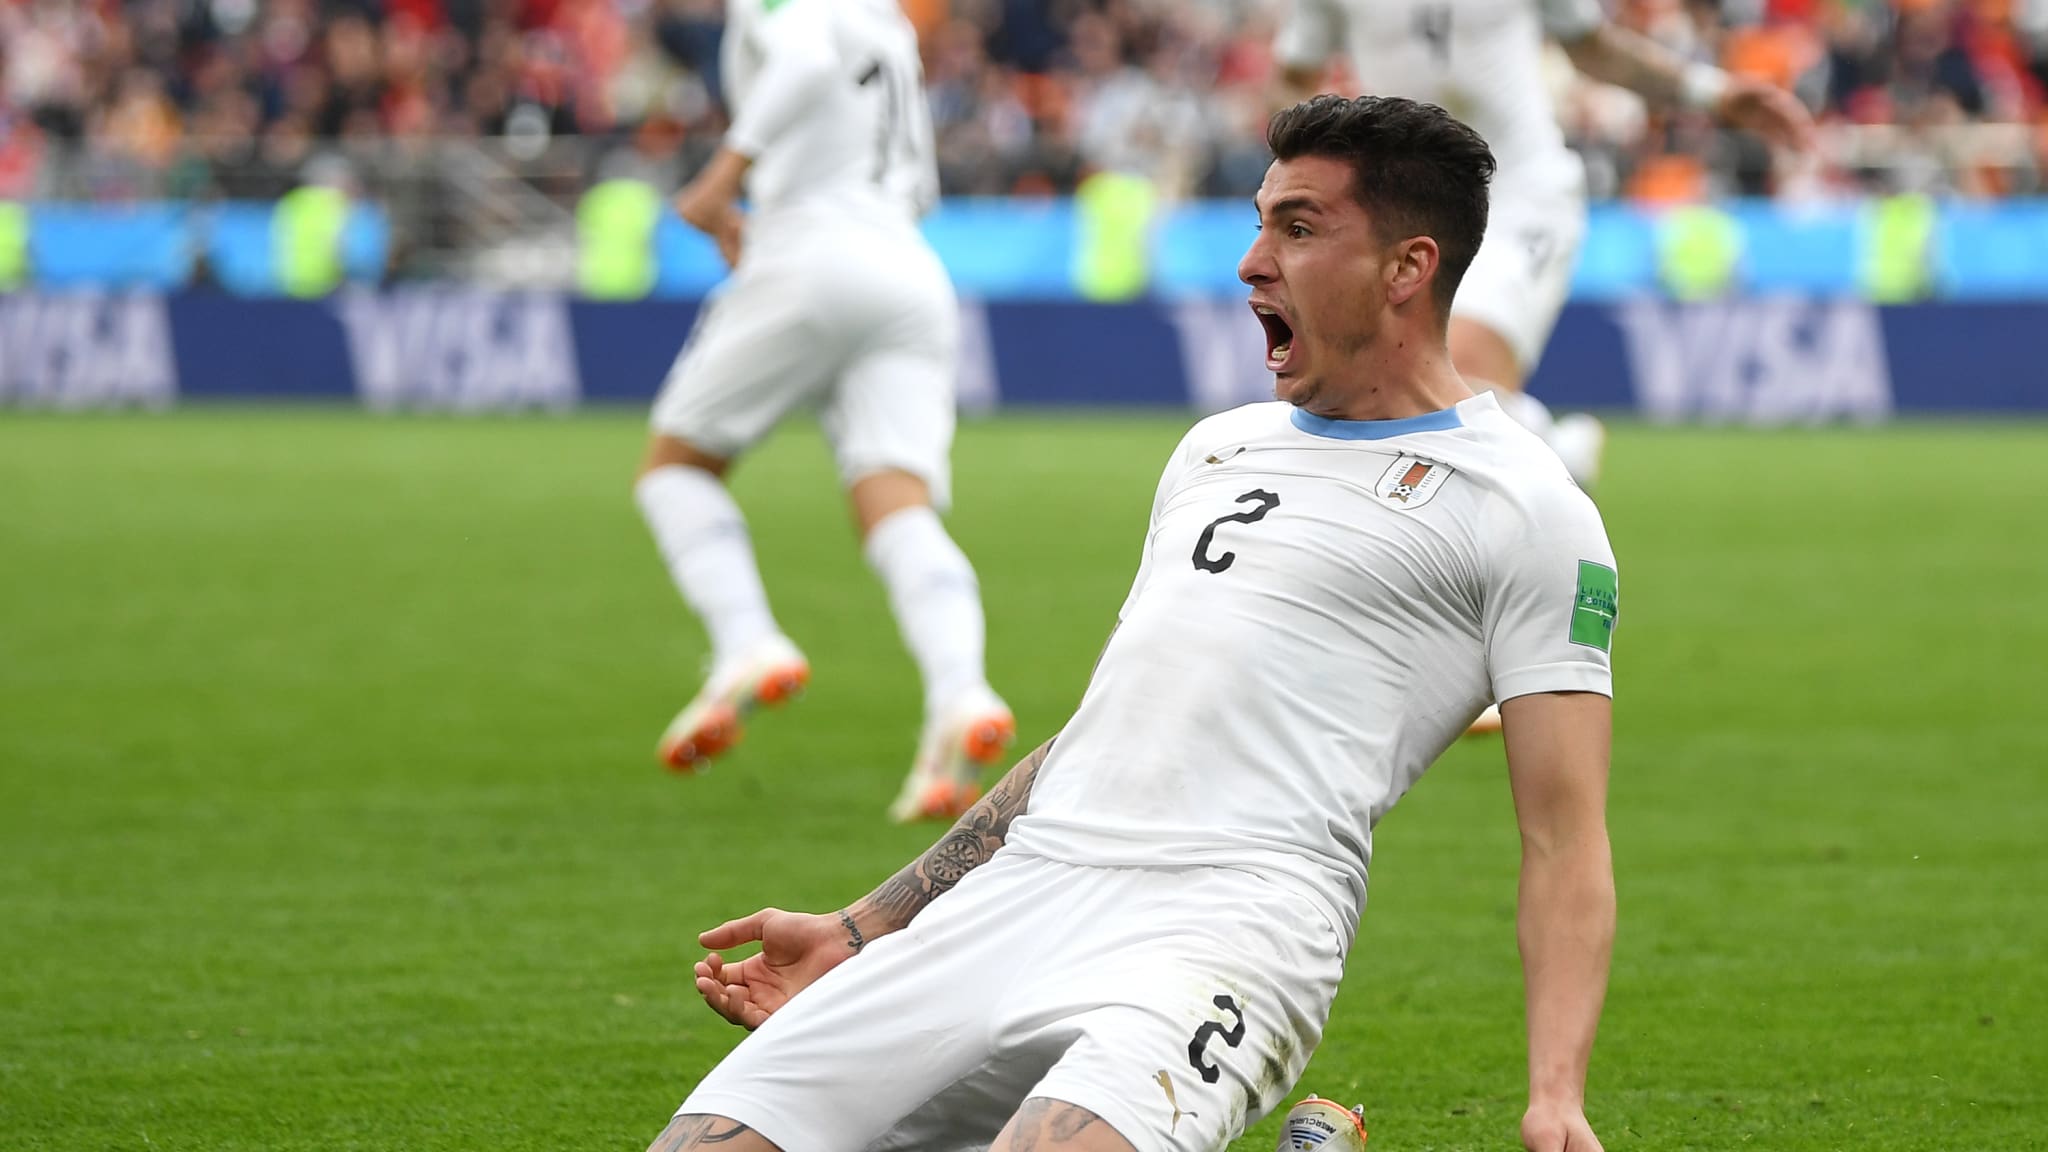 SELEBRASI. Jose Gimenez dari Uruguay terlihat gembira saat merayakan gol pertamanya di Piala Dunia 2018 saat melawan Mesir, Jumat, 15 Juni. Foto dari FIFA/com 